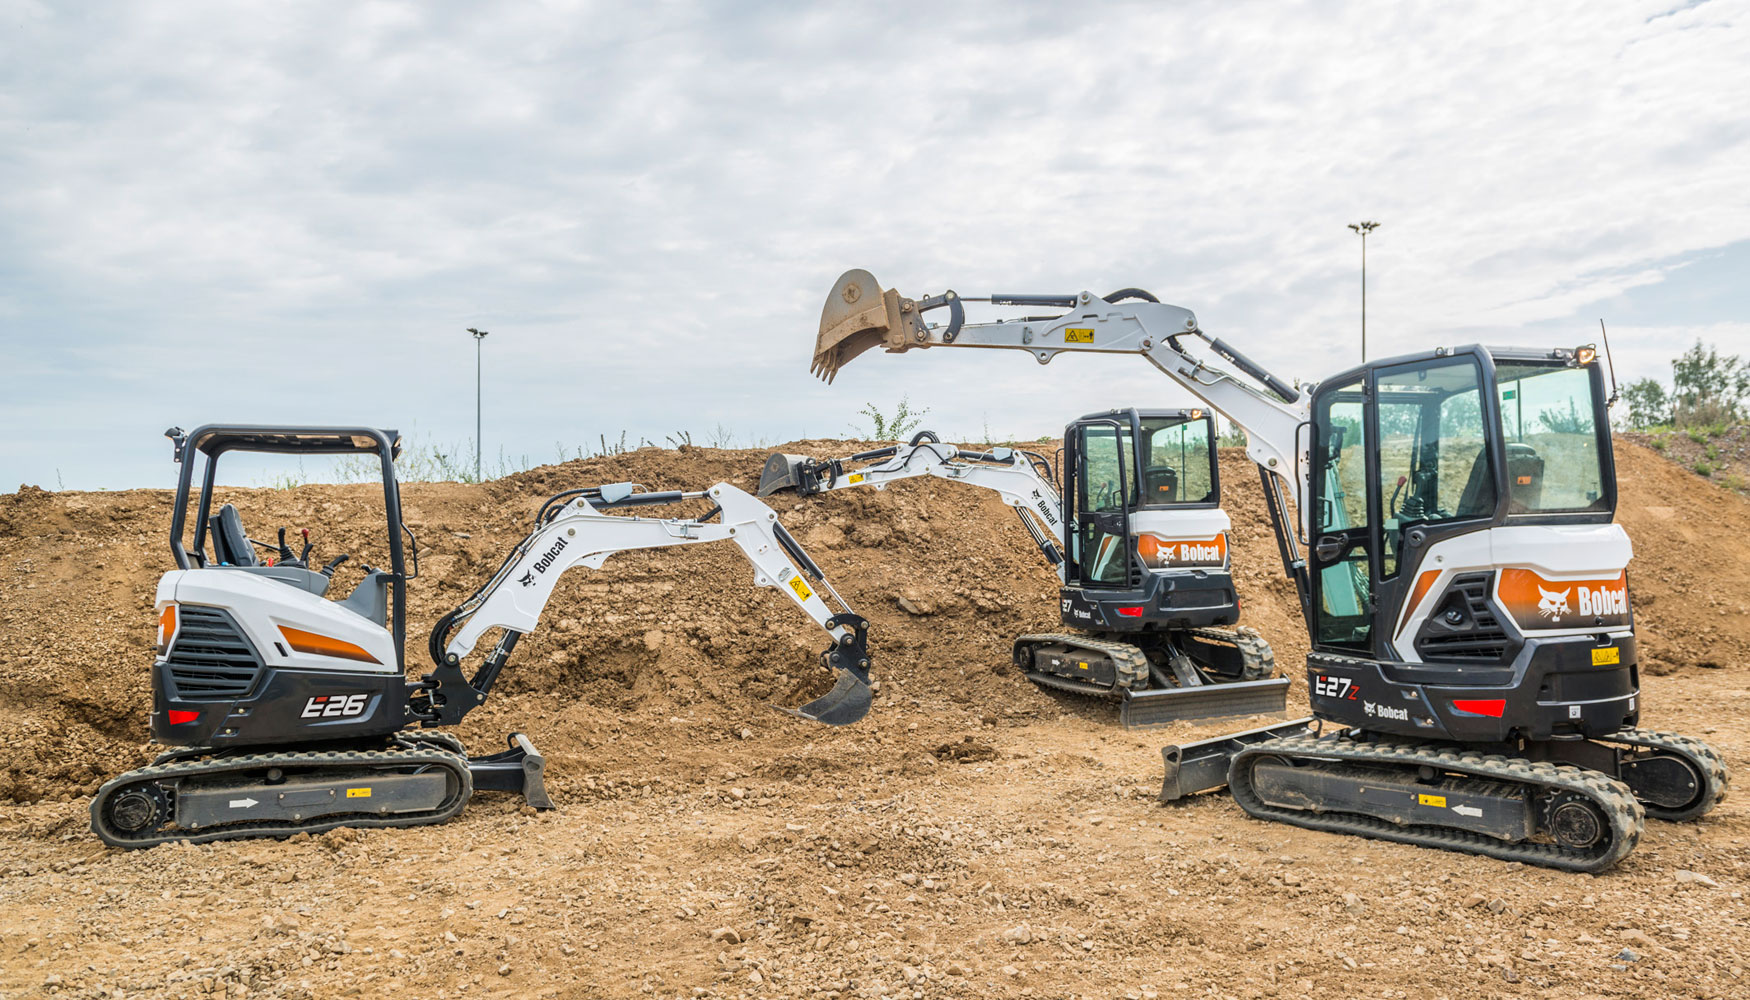 Intermat 2018 acoger la presentacin internacional de las nuevas excavadoras compactas E26, E27z y E27 de Bobcat